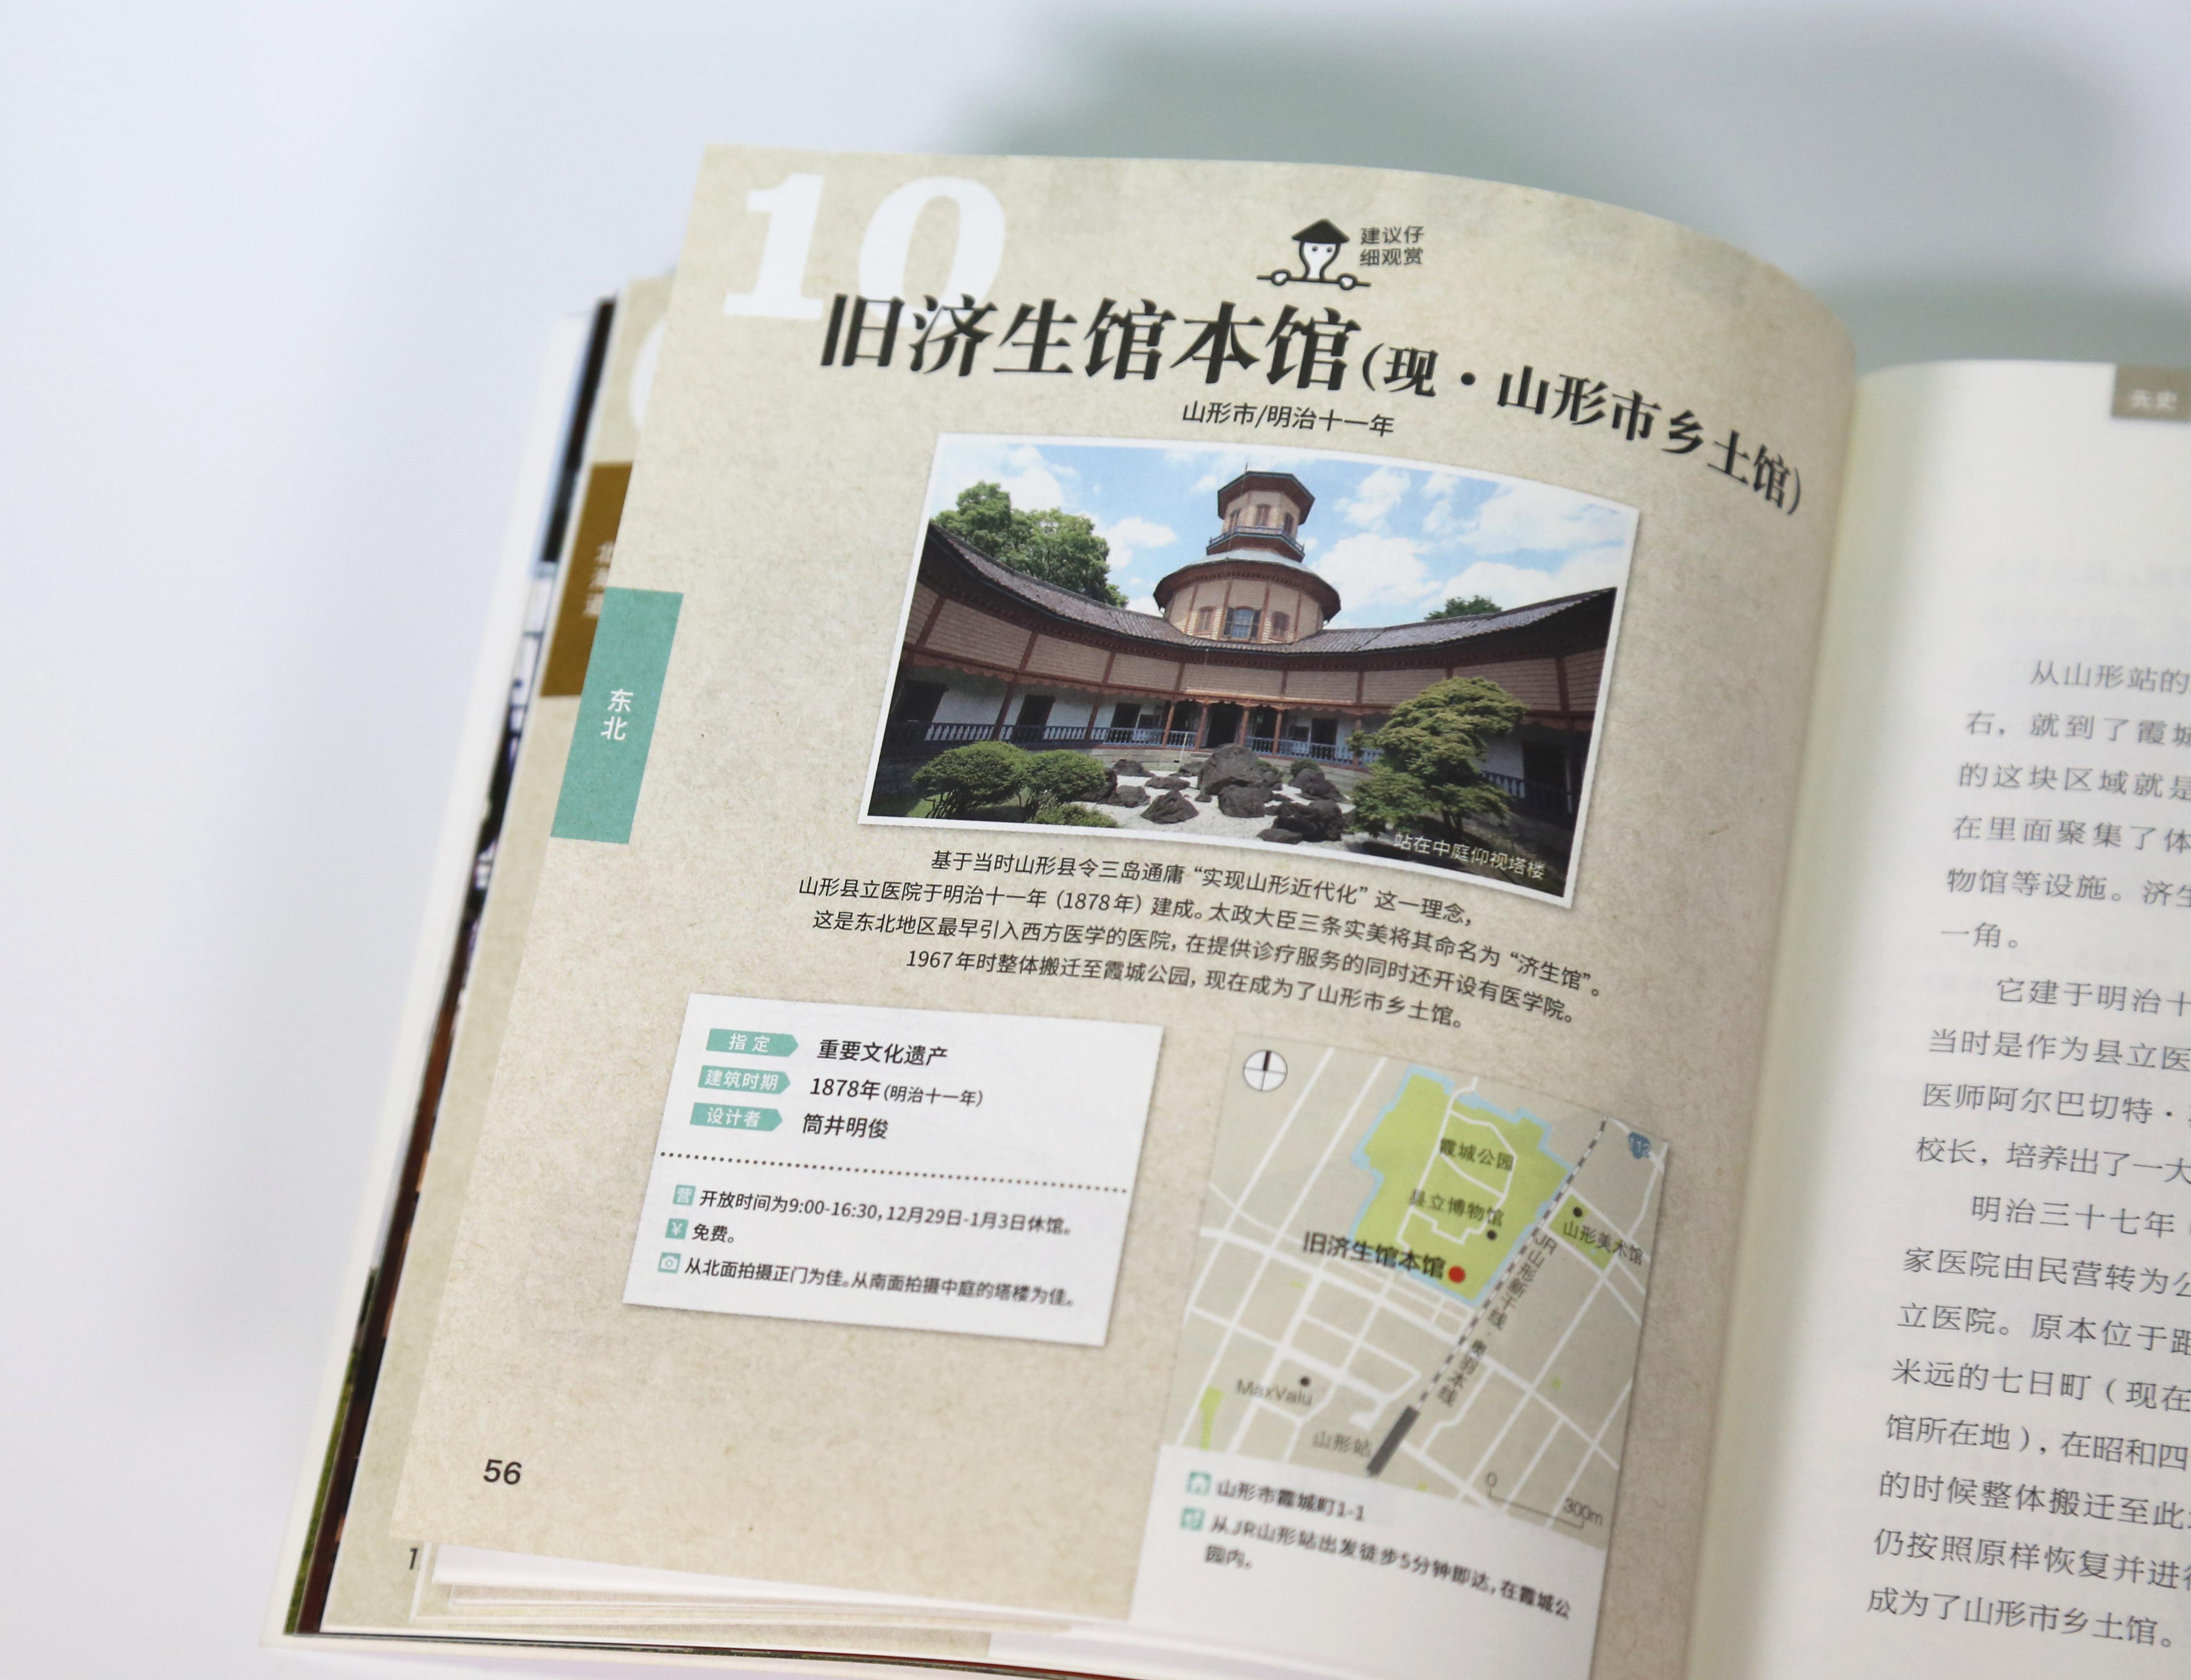 推荐一些可以了解日本的历史社会文化建筑的书